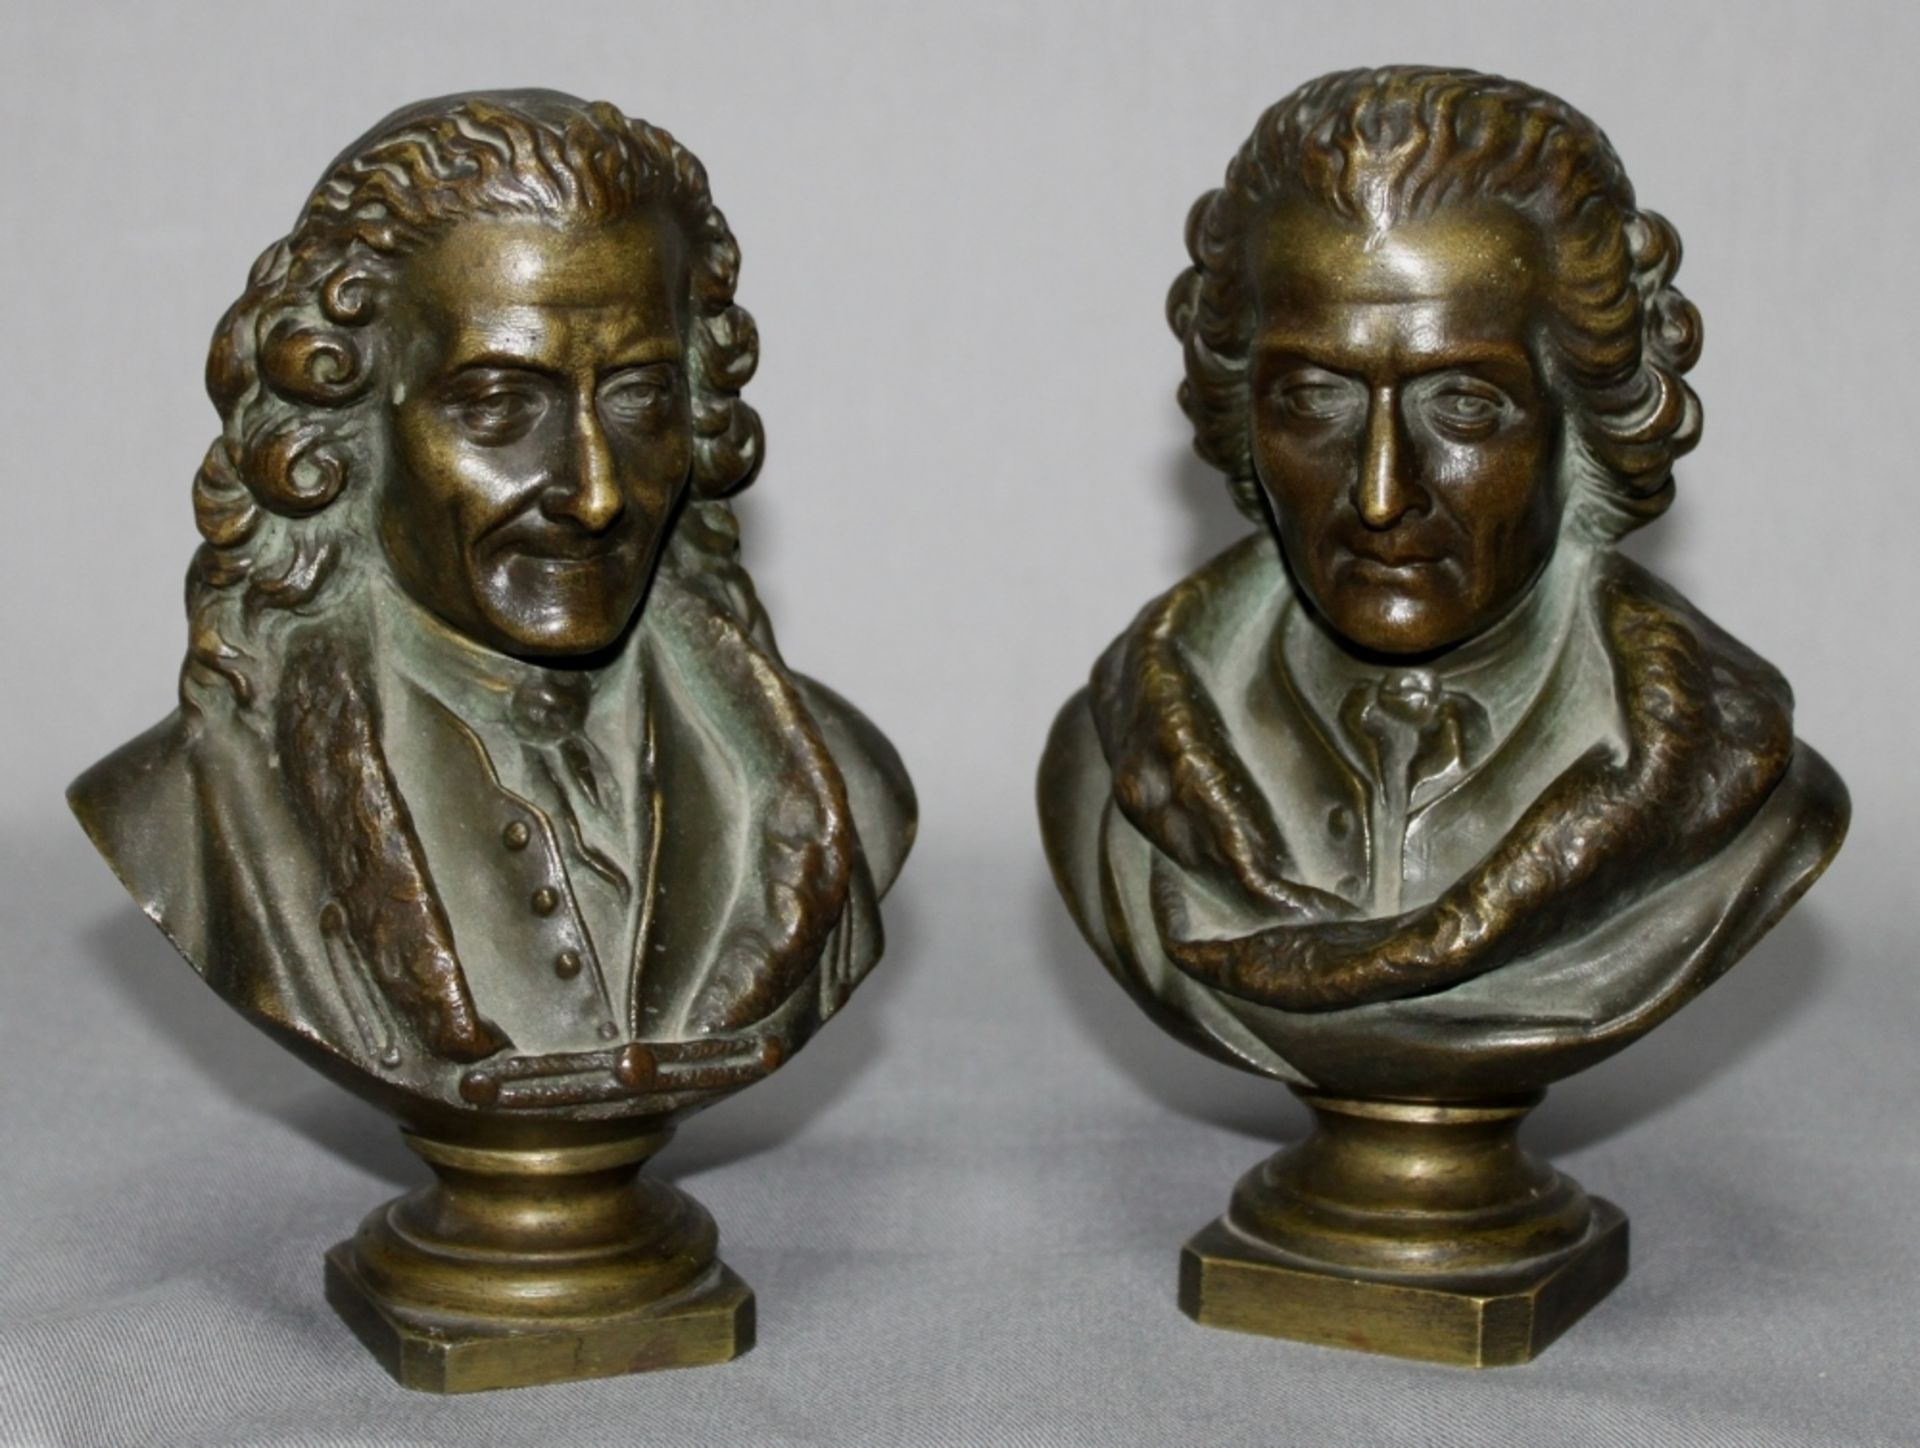 Bronze. Skulptur - Voltaire und Rousseau. Zwei kleine Büsten mit dunkler Patina. An der Unterseite